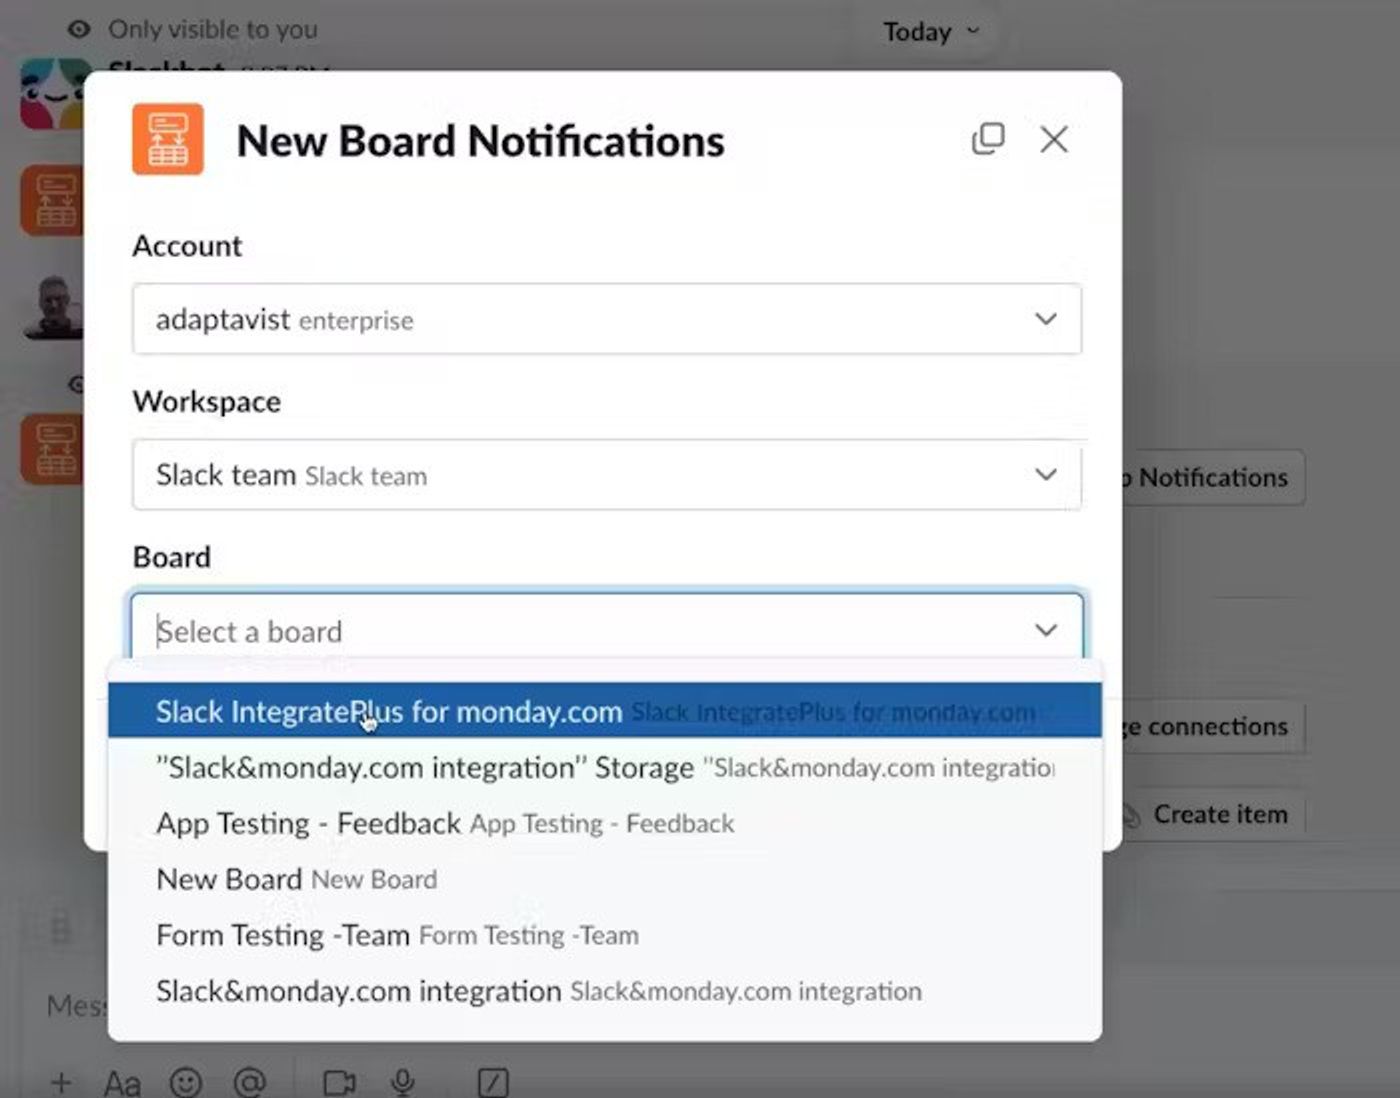 Screenshot showing step 8 of Slack onboarding flow for Slack IntegratePlus.